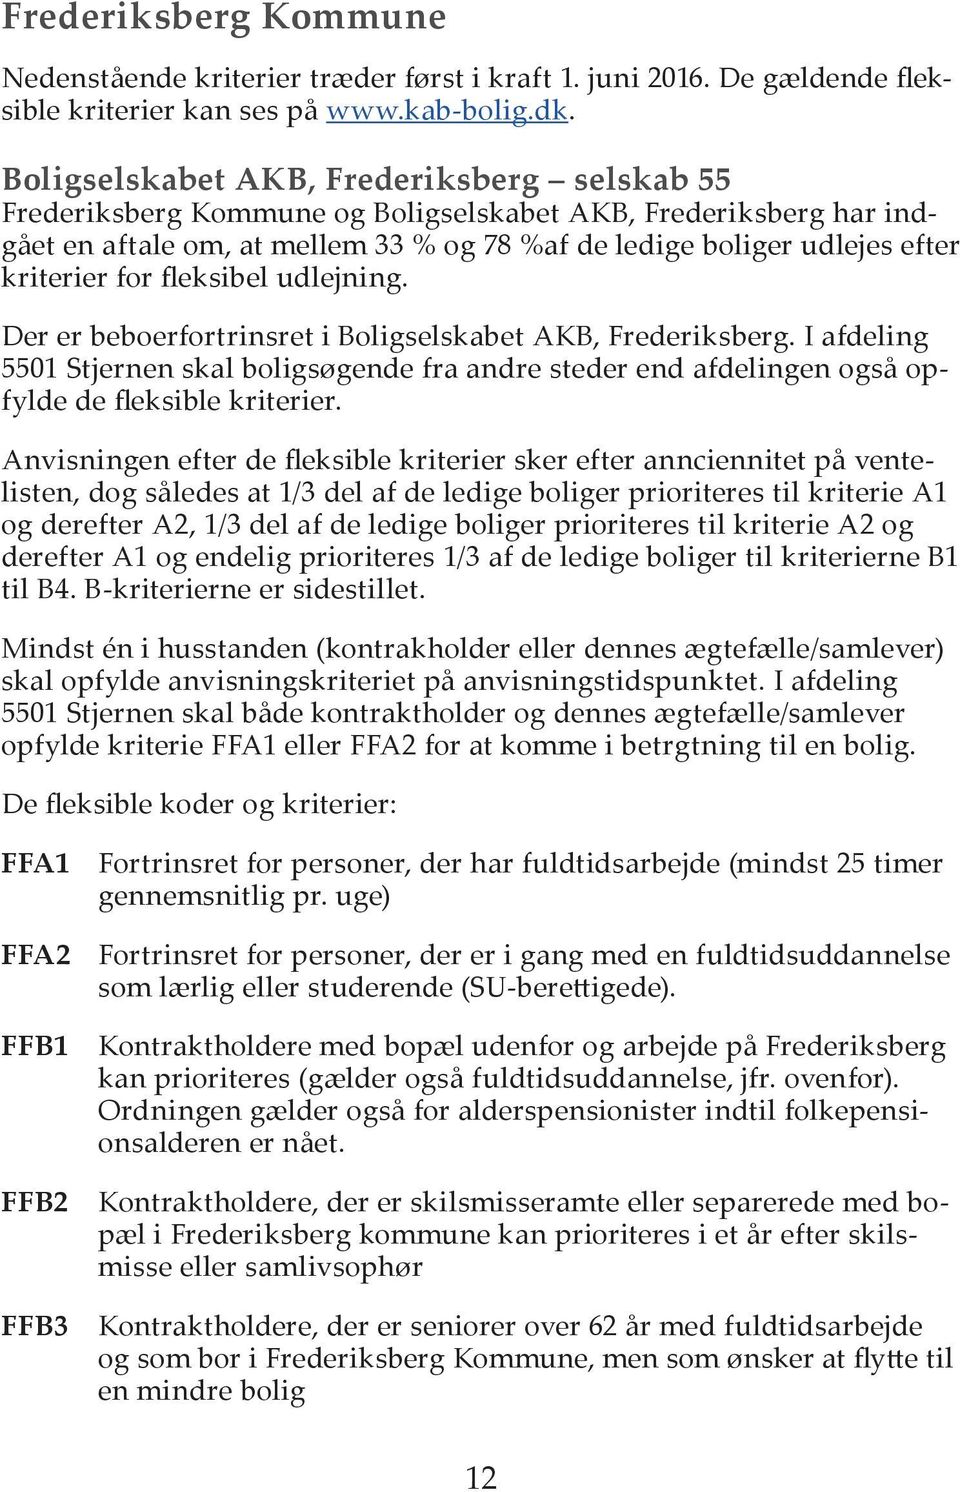 for fleksibel udlejning. Der er beboerfortrinsret i Boligselskabet AKB, Frederiksberg. I afdeling 5501 Stjernen skal boligsøgende fra andre steder end afdelingen også opfylde de fleksible kriterier.